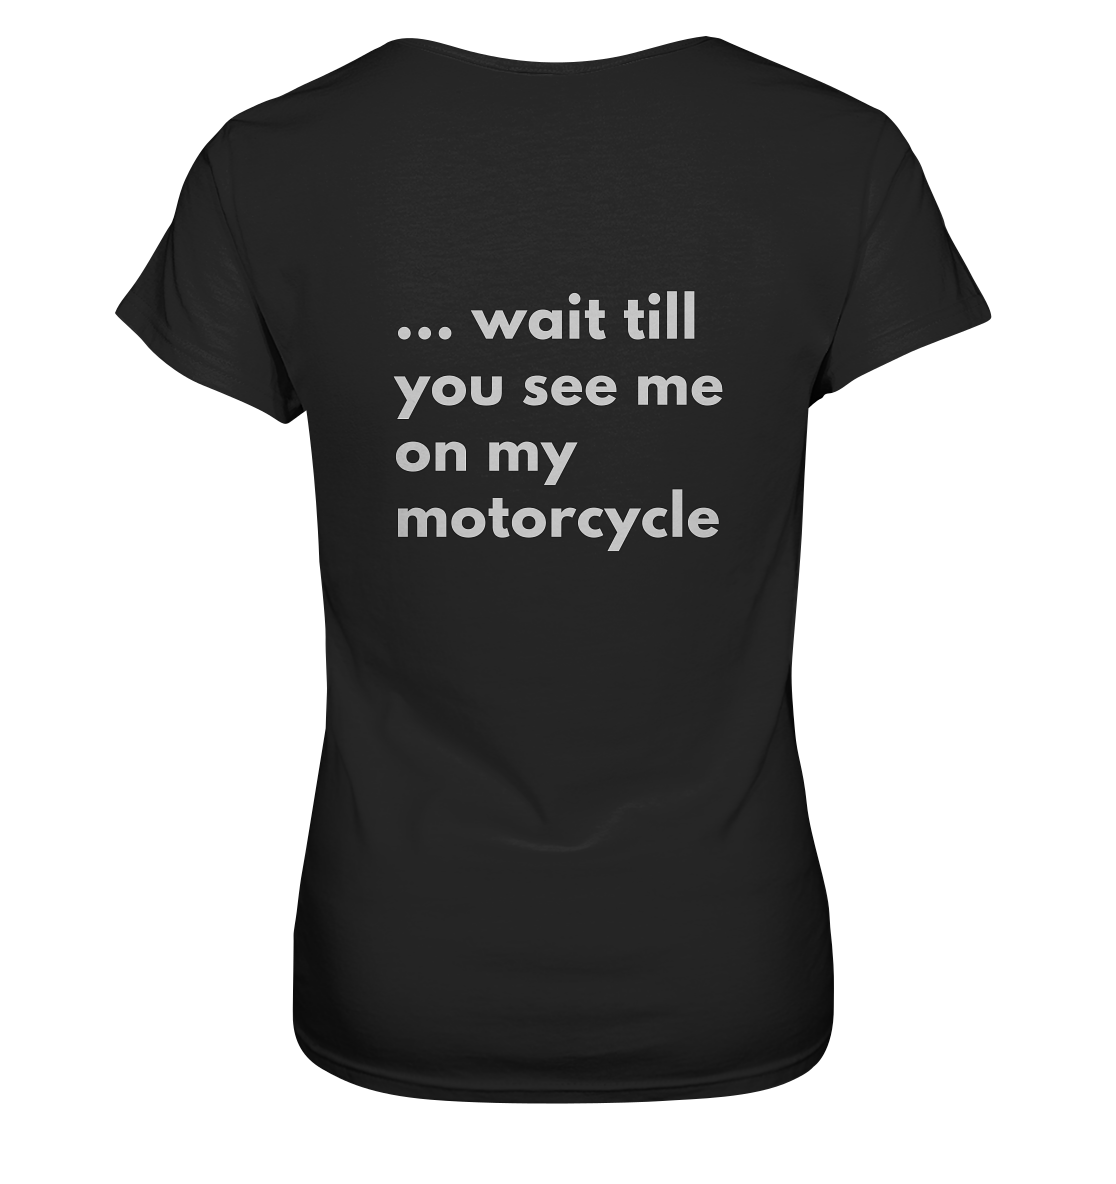 Damen-Motorrad-T-Shirt / Ladies Motorcycle Shirt, white funny print front _ mit witzigem weißem Aufdruck vorn: "If you think I'm sexy now ...", hinten / back: "... wait till you see me on my motorcycle", Rundhals, schwarz/ black